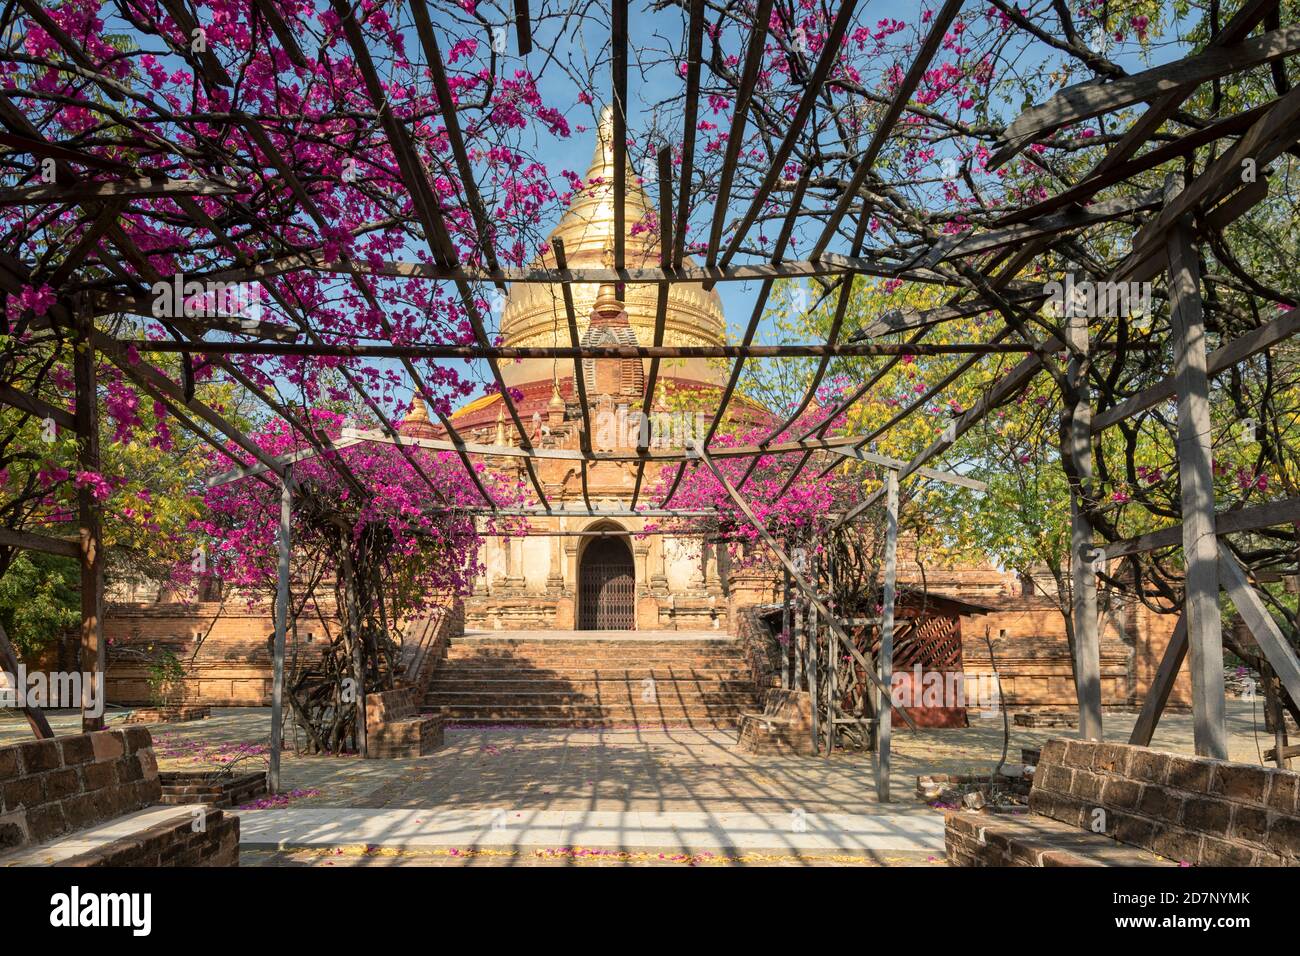 Ancient Dhammayazika Pagoda at Bagan, Myanmar Stock Photo